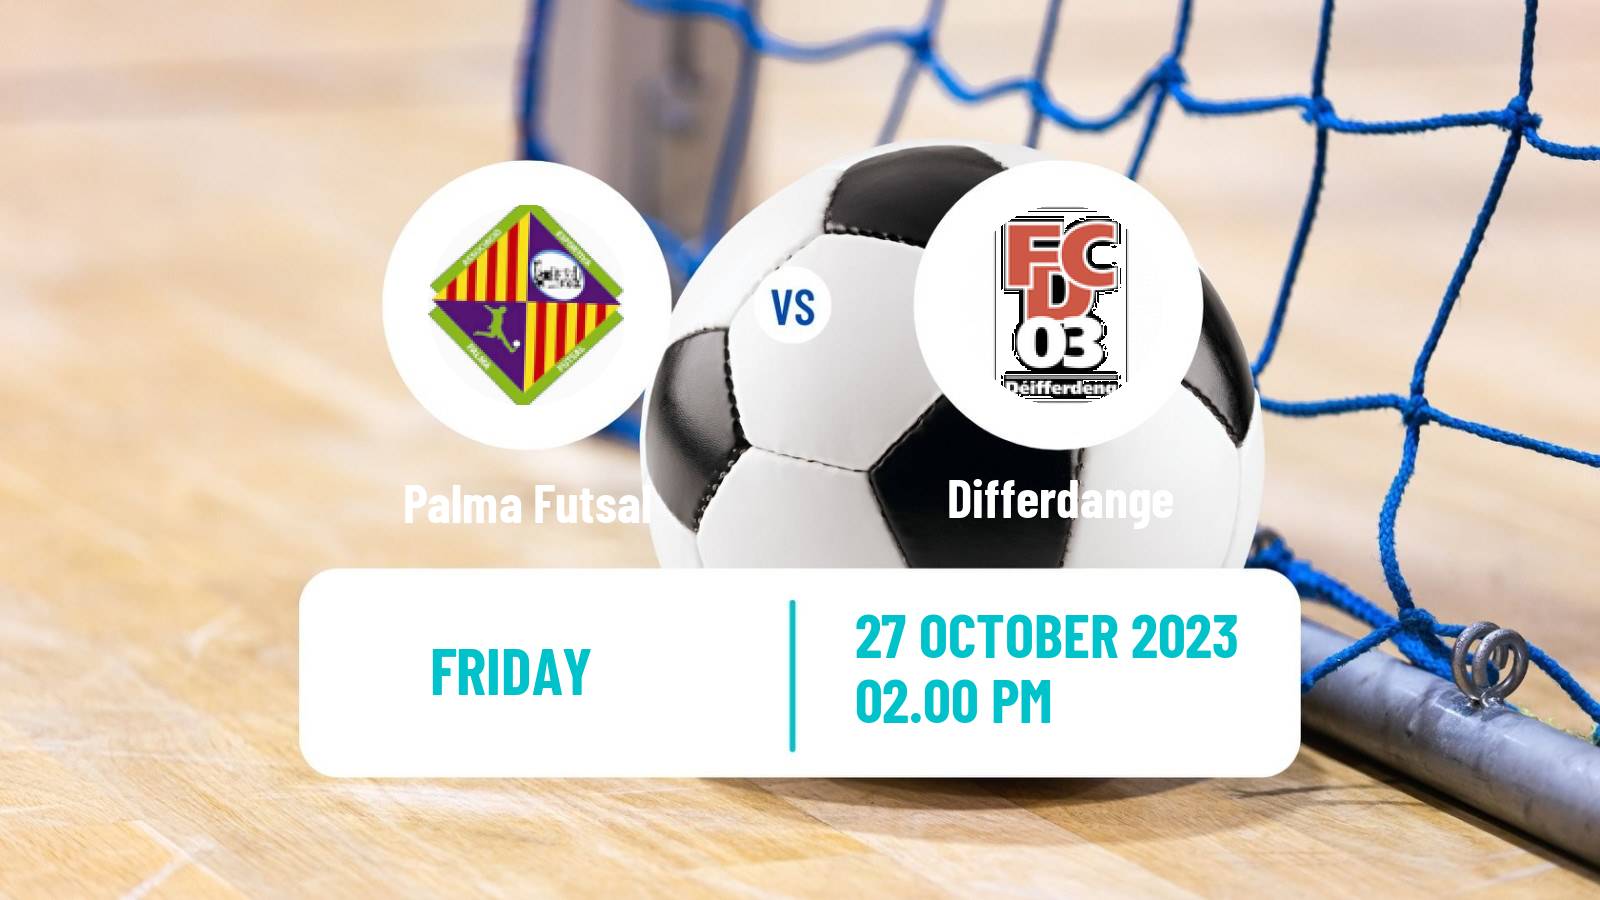 Futsal UEFA Futsal Champions League Palma Futsal - Differdange